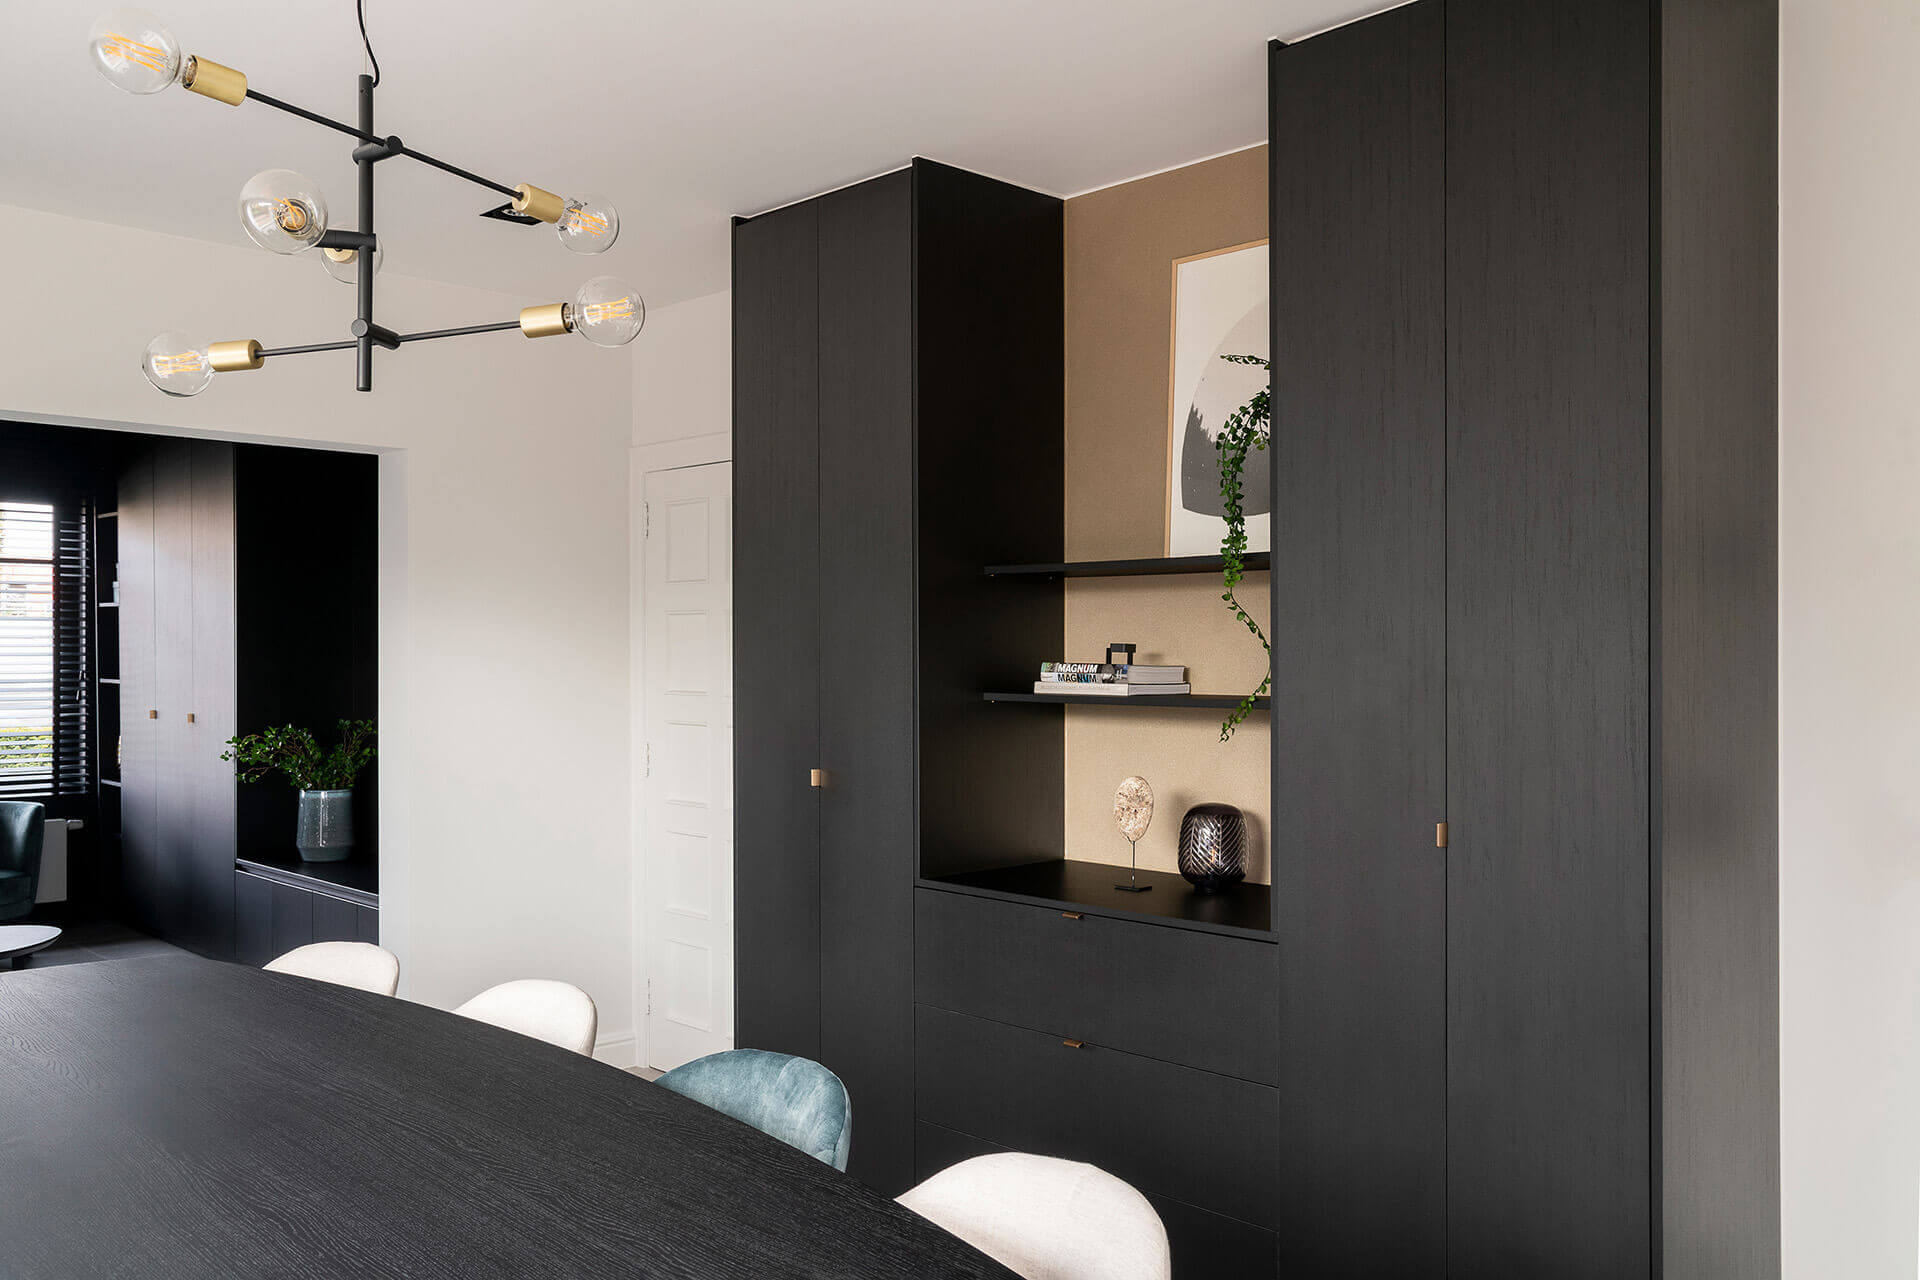 storage space in living room in elegant black